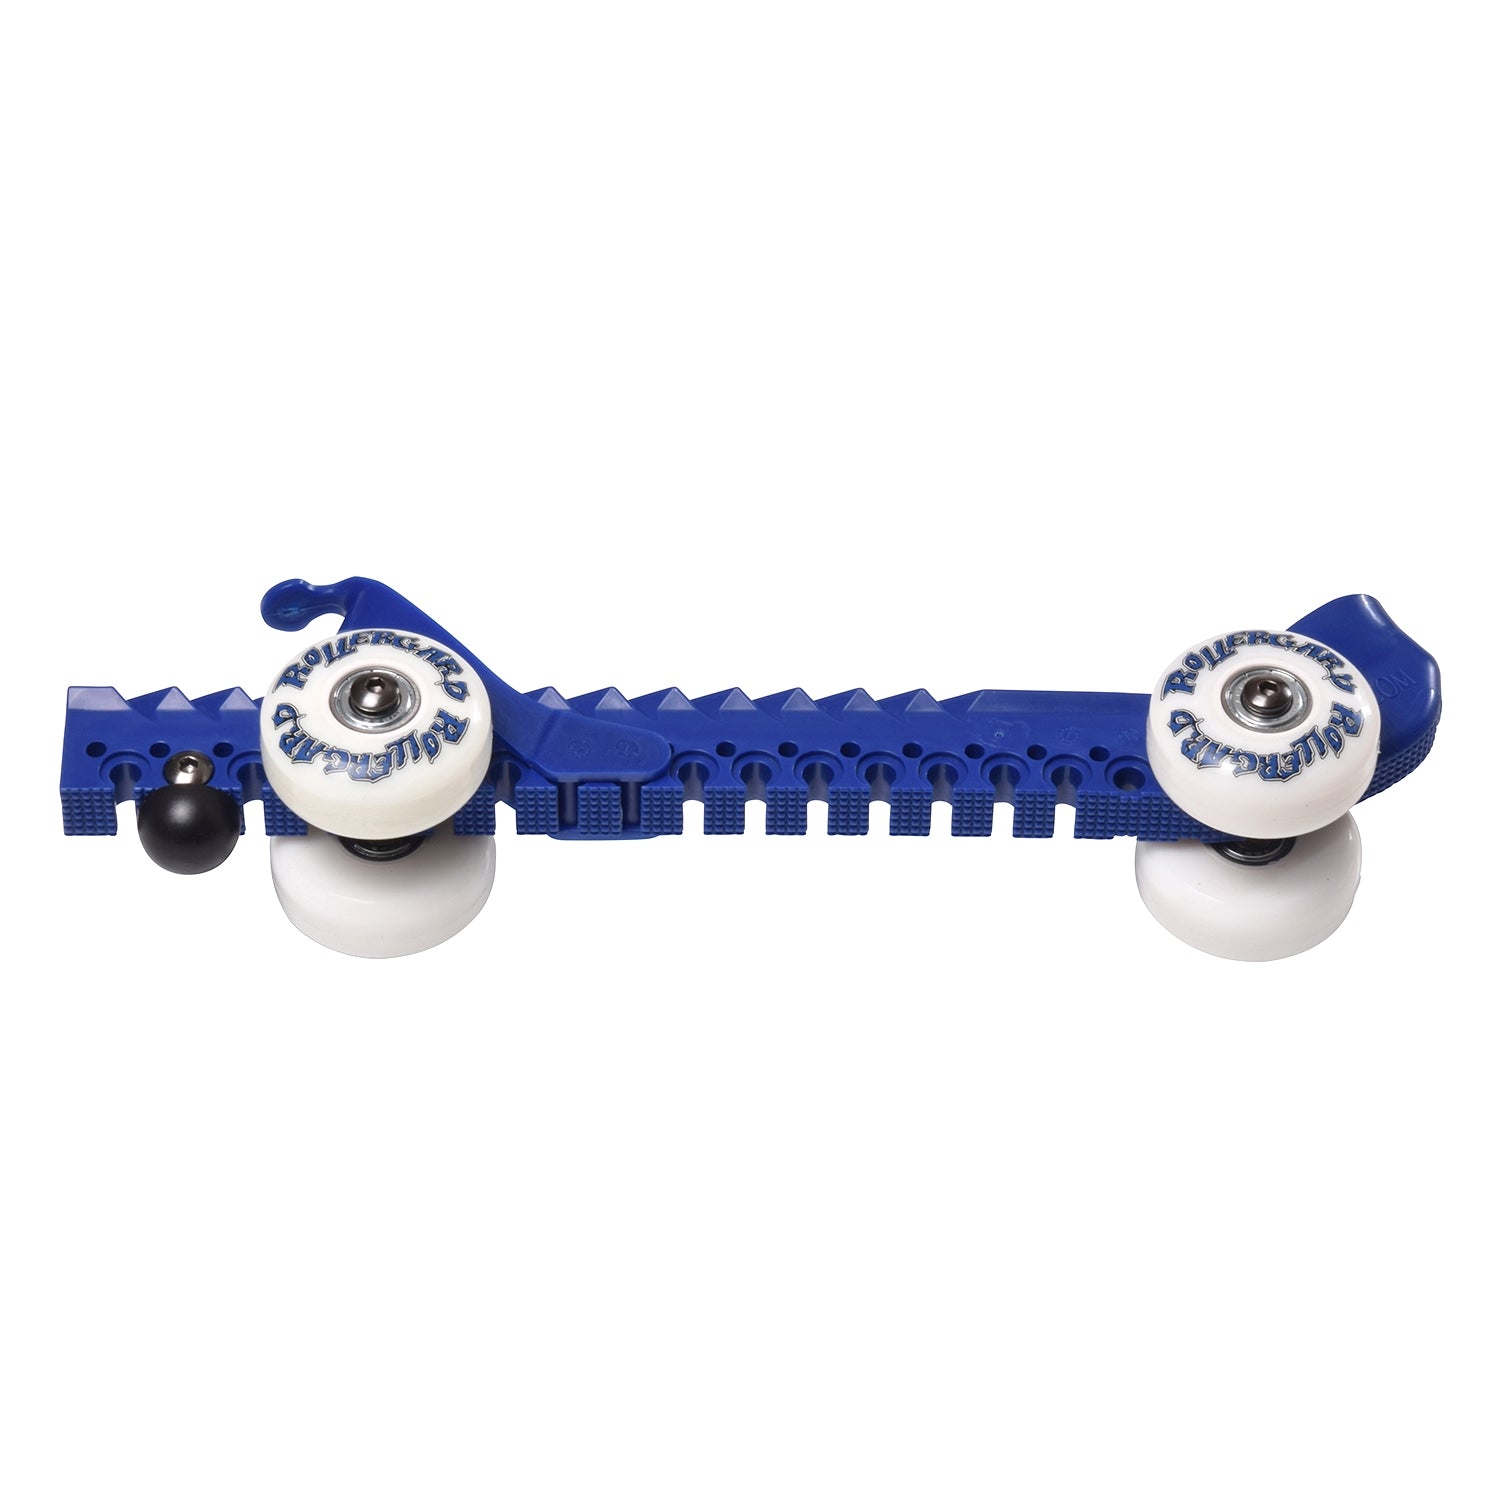 Rollergard Kufenschoner Blau für K2, Bauer, GRAF, CCM, auch verstellbare Schlittschuhe